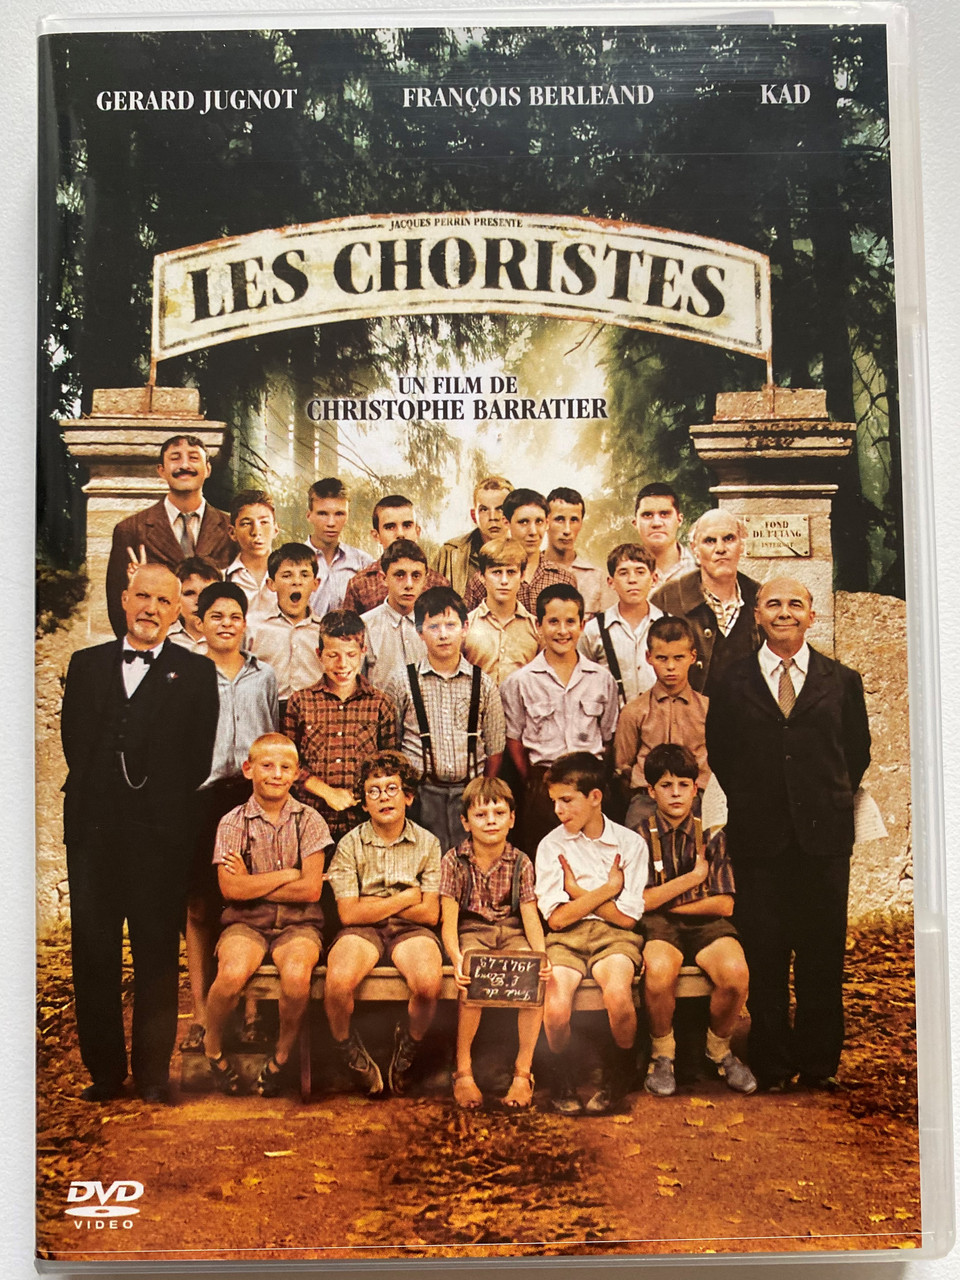  The Chorus (Les Choristes) : Jean-Paul Bonnaire, Marie